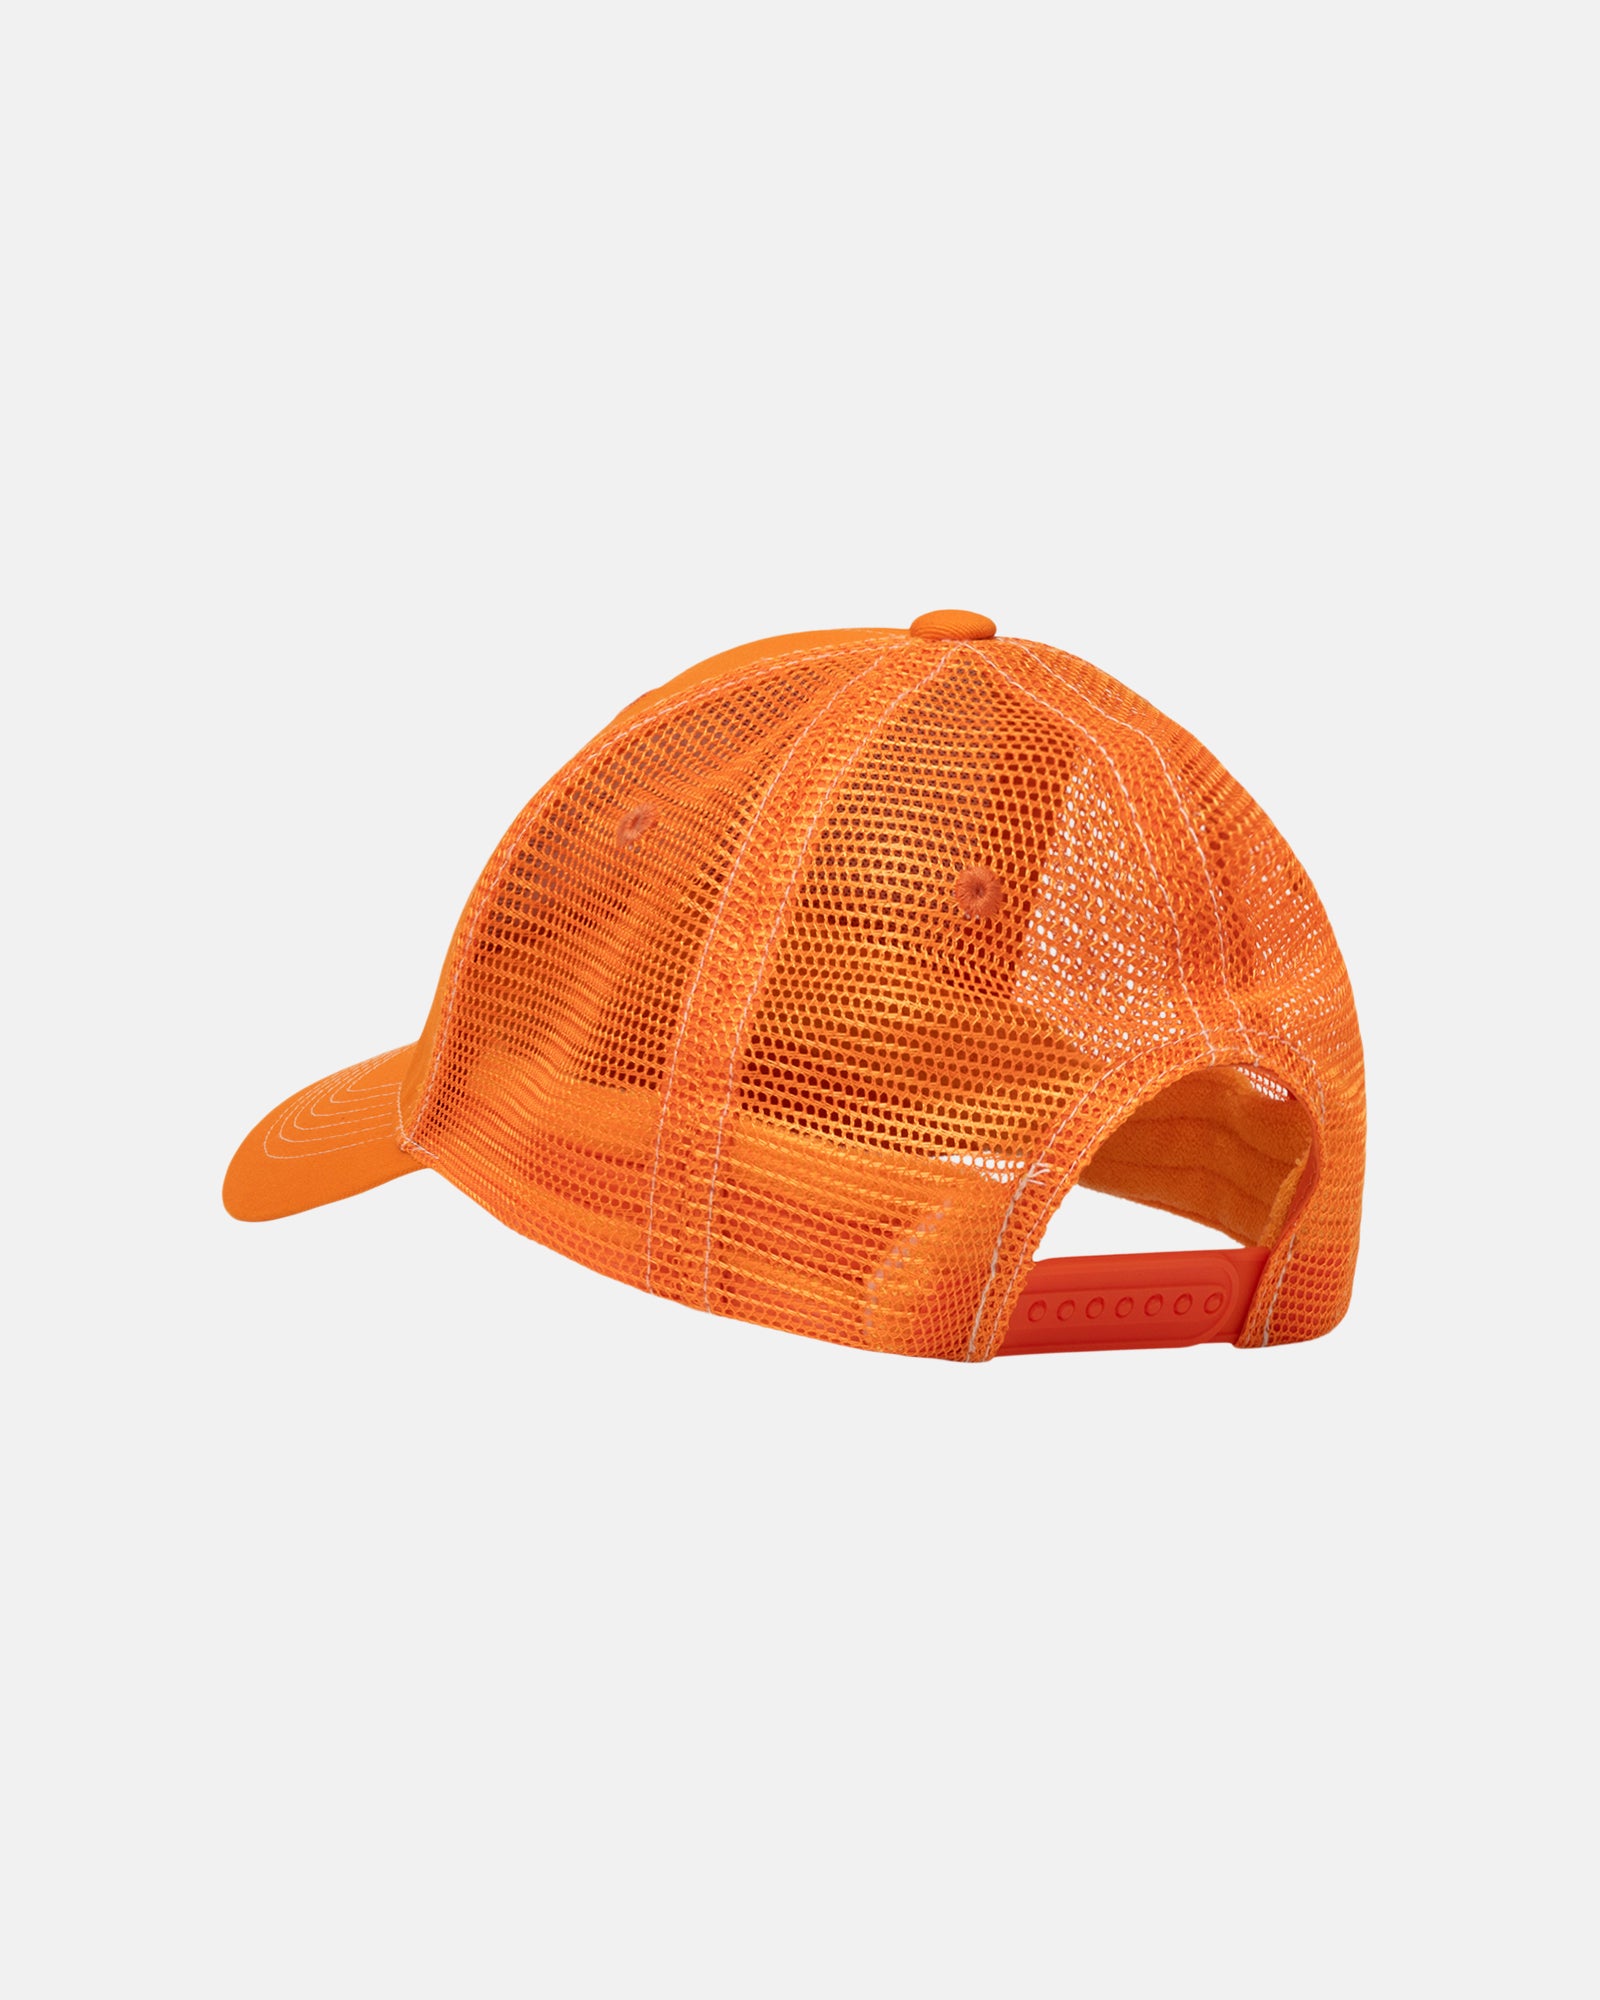 Stüssy Low Pro Trucker 8 Ball Snapback Orange Headwear